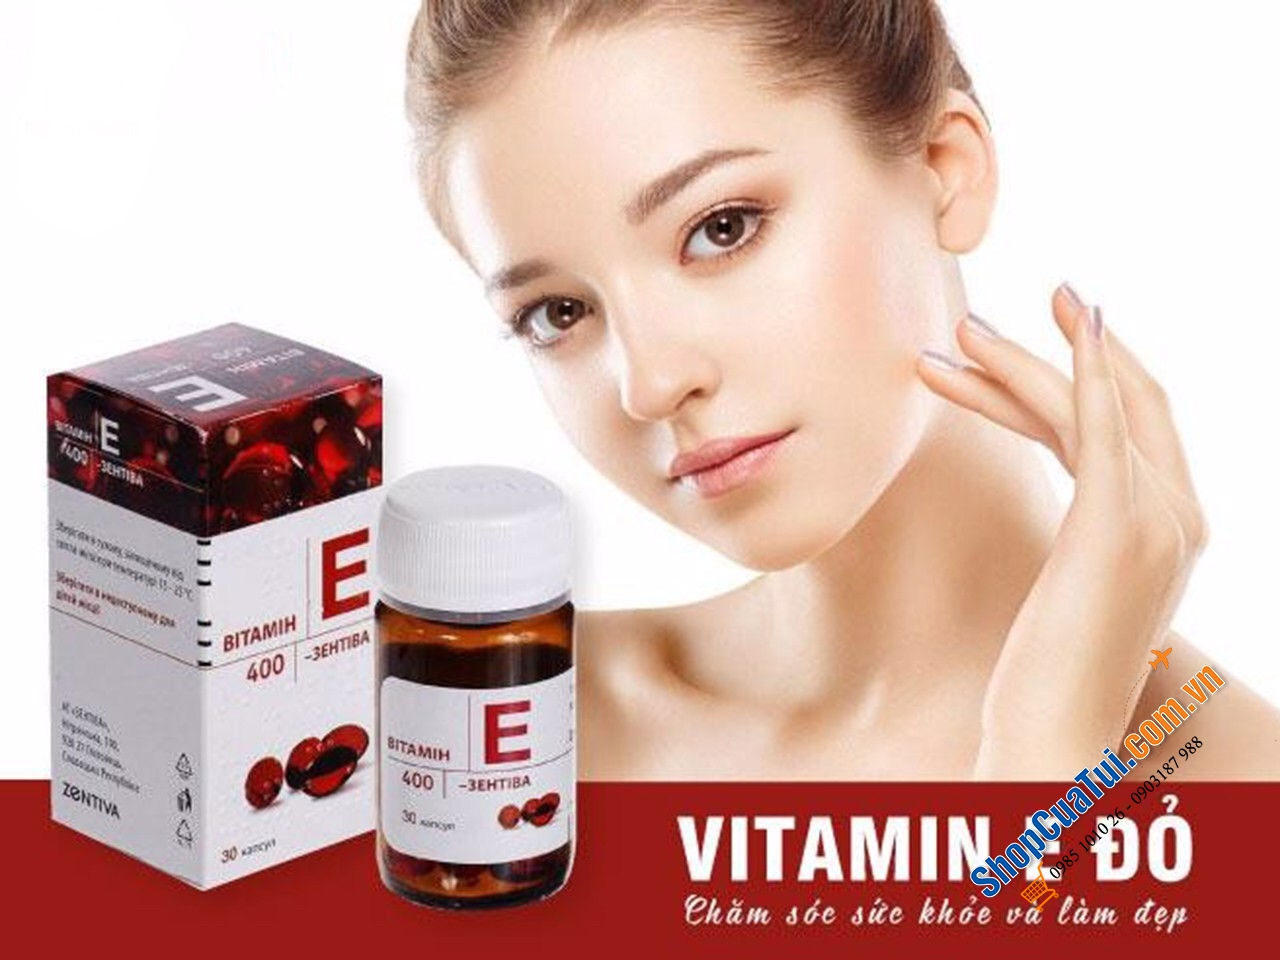 Vitamin E 400mg lọ 30 viên - Vitamin E đỏ của Nga -  Viên uống Vitamin E Mirrolla/Zentiva 400mg của Nga chiết xuất hoàn toàn từ tự nhiên, giúp cung cấp độ ẩm cho da, hỗ trợ cải thiện nám, tàn nhang, mụn trứng cá, cho làn da trở nên hồng hào